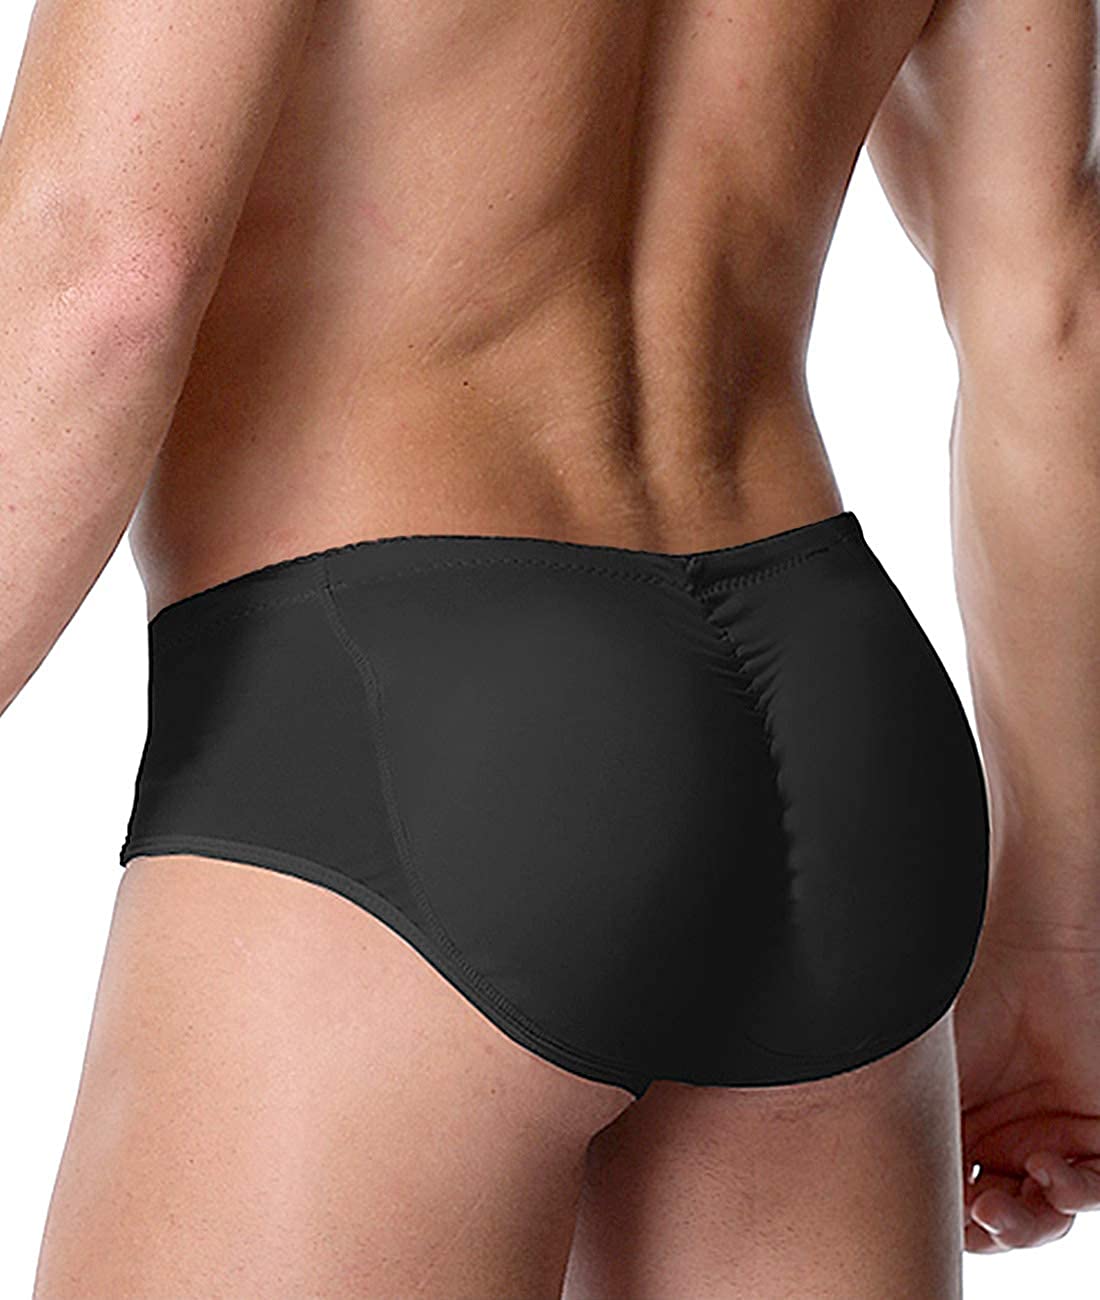 DoLoveY Men Butt Lifter Shapewear Butt Shaper Boxer Padded Enhancing  Underwear T